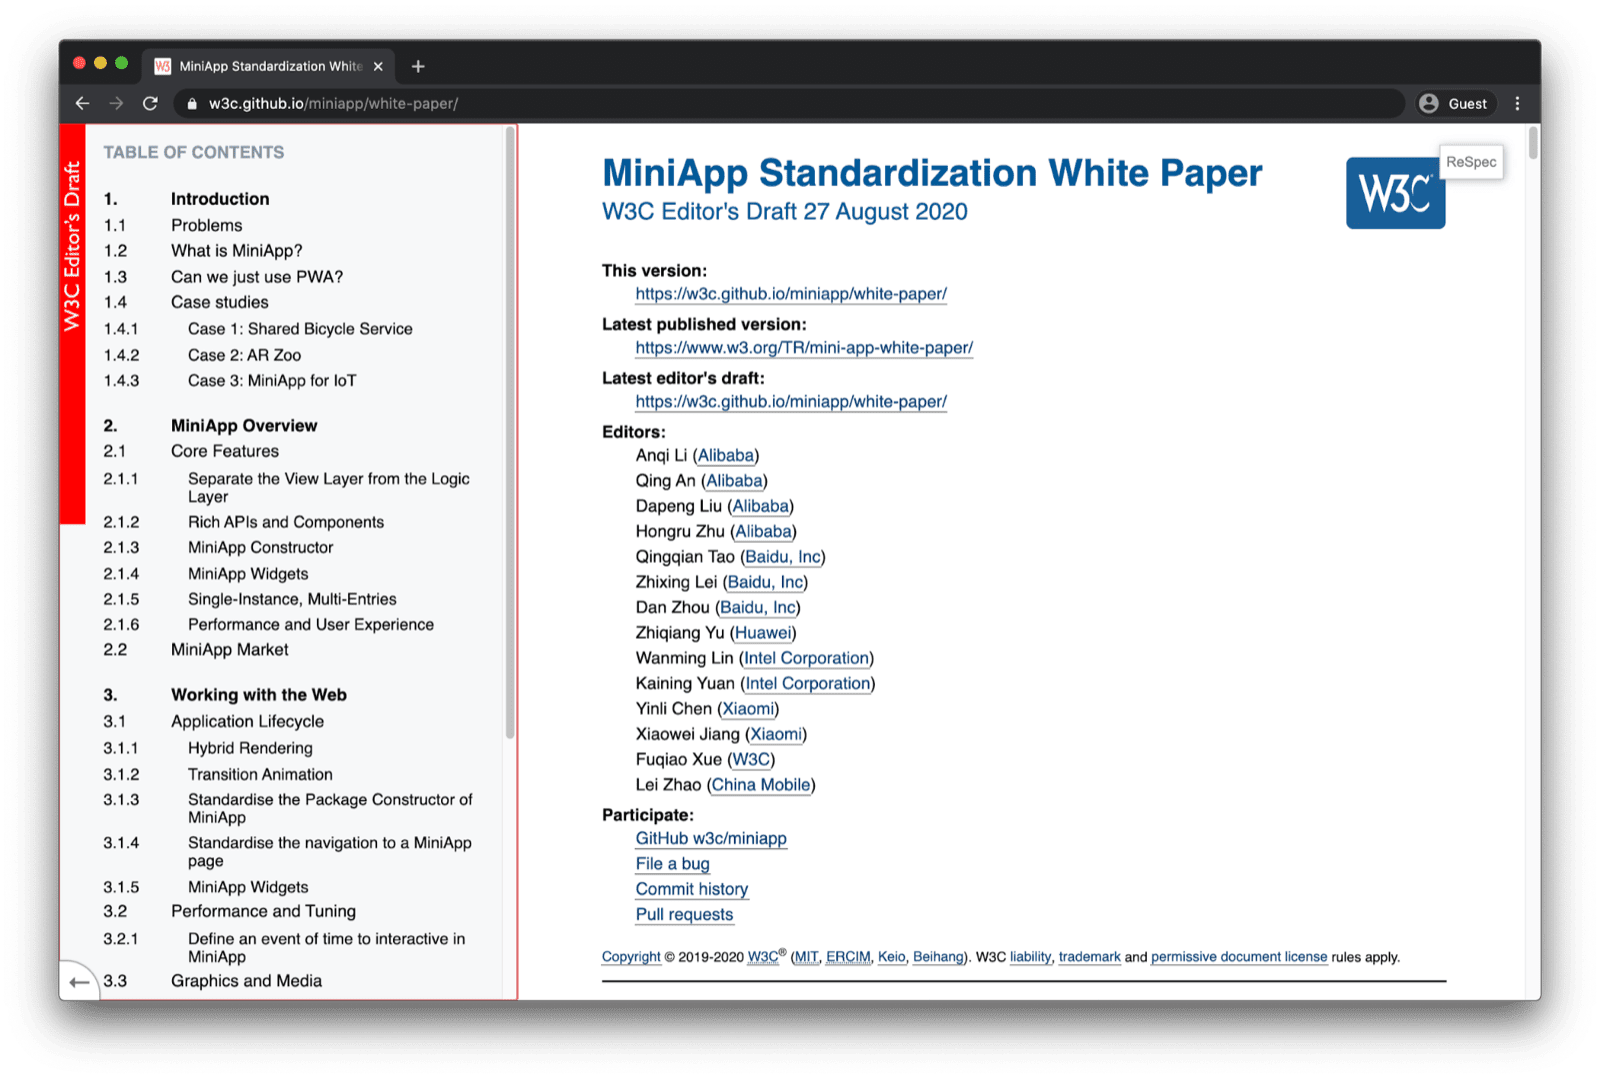 El encabezado del Informe de estandarización de MiniApp en una ventana del navegador.